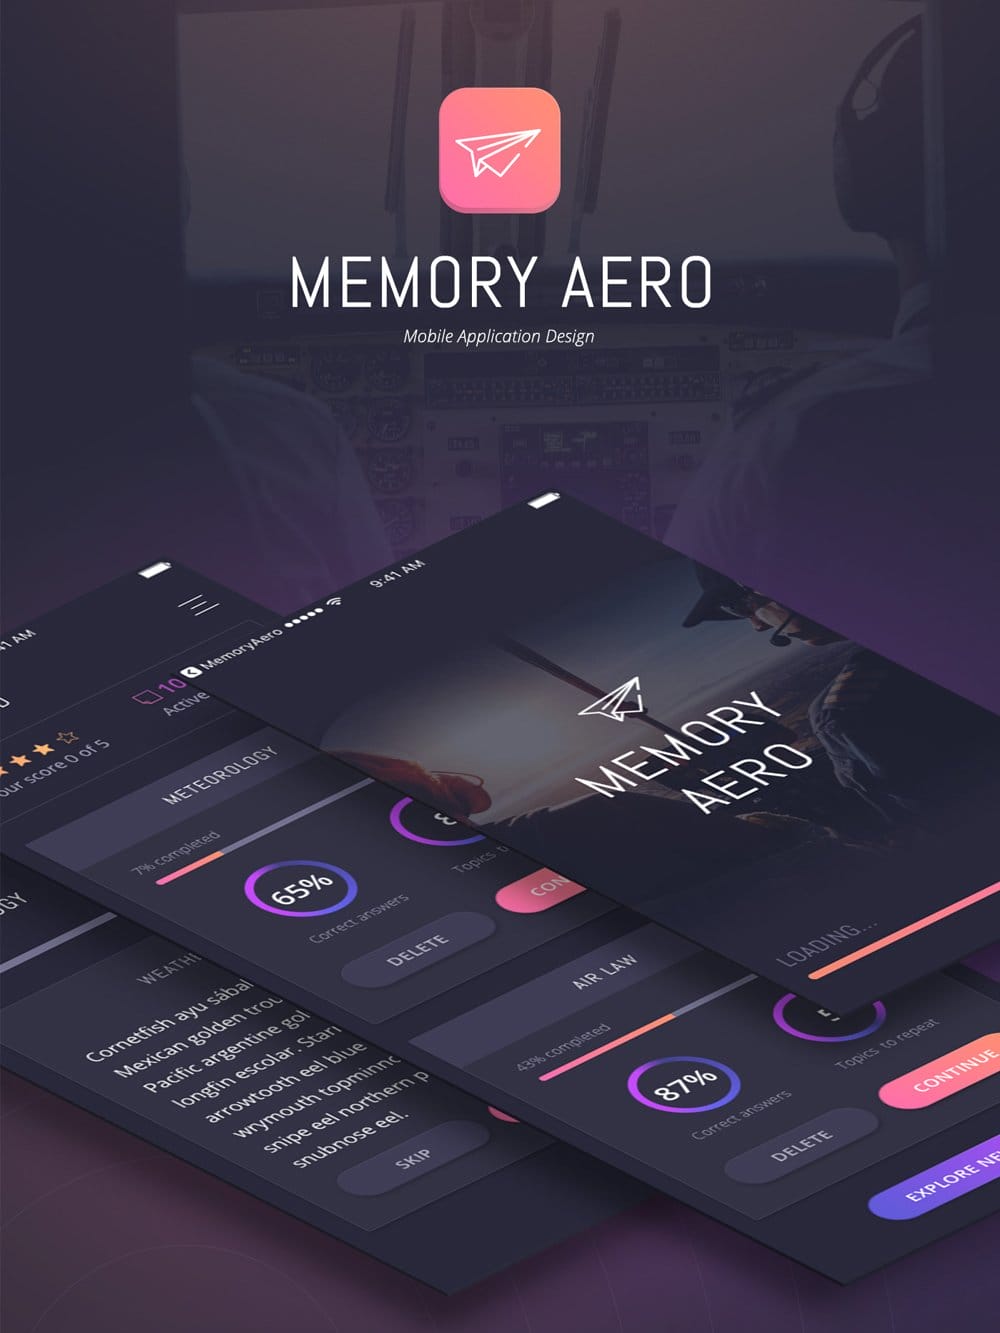 Memory Aero iOS App UI Kit PSD